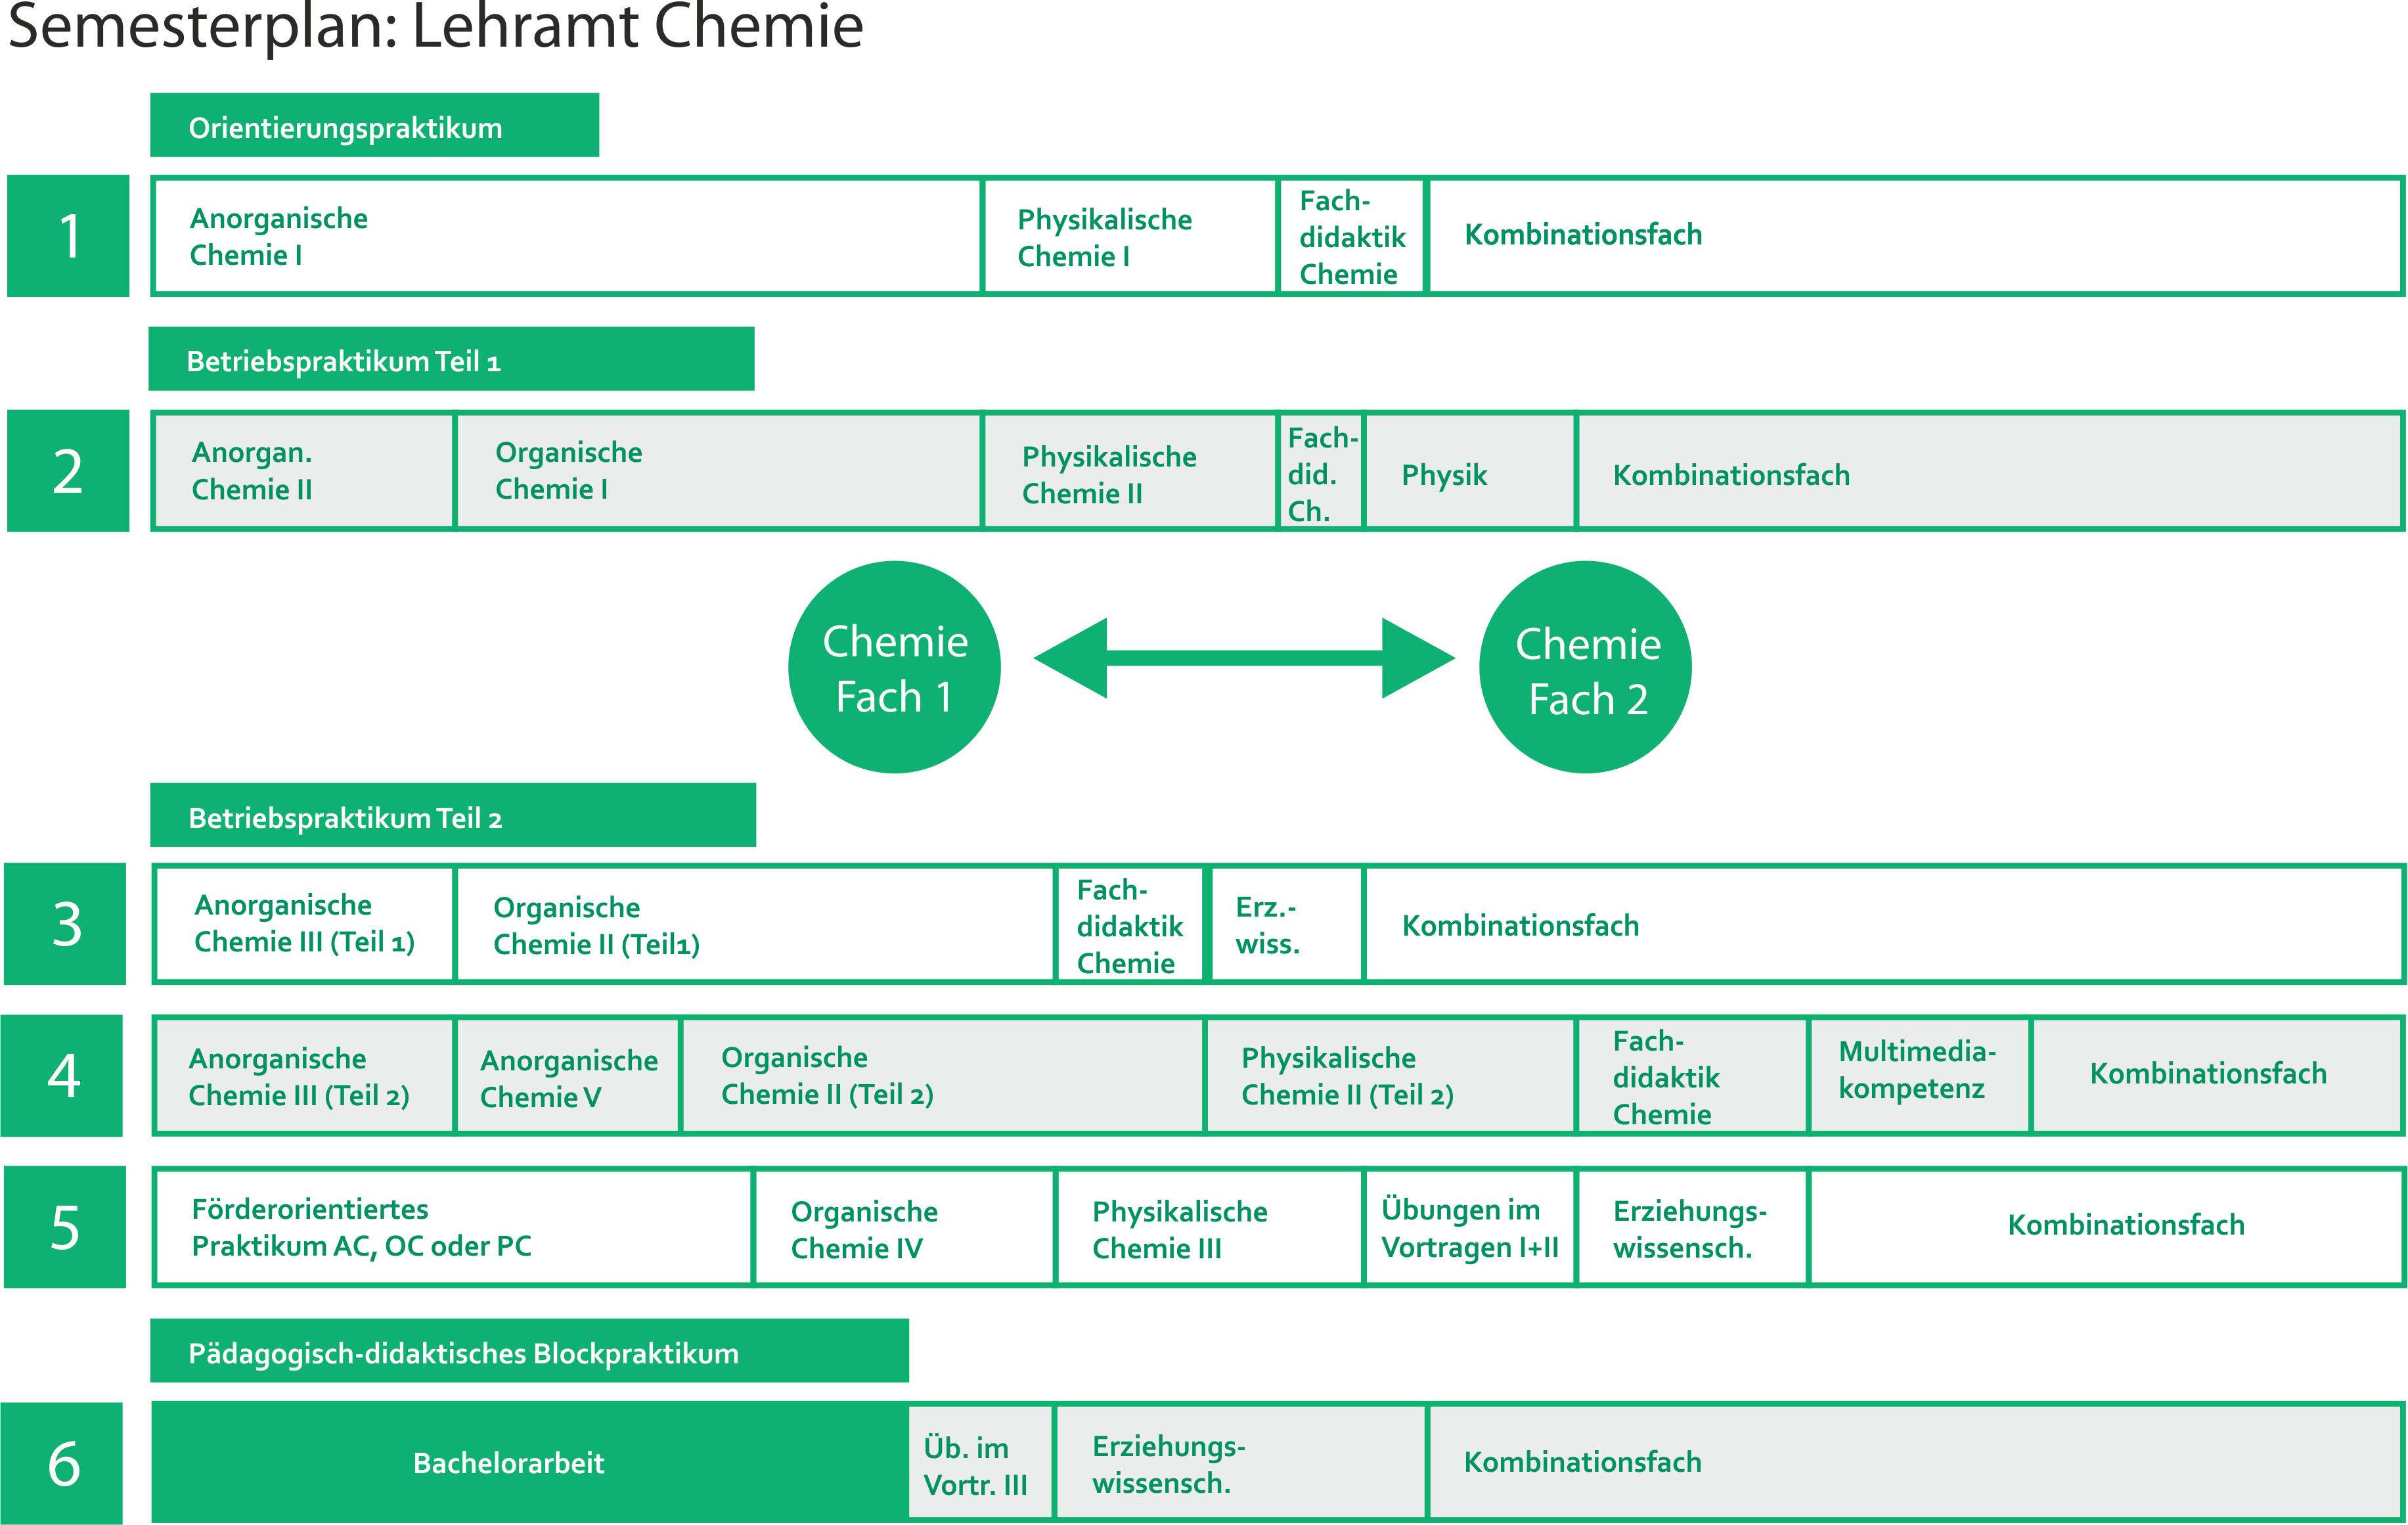 Die Grafik gibt einen Überblick über den Semesterplan des Lehramtsstudiums Chemie an der Universität Bayreuth.